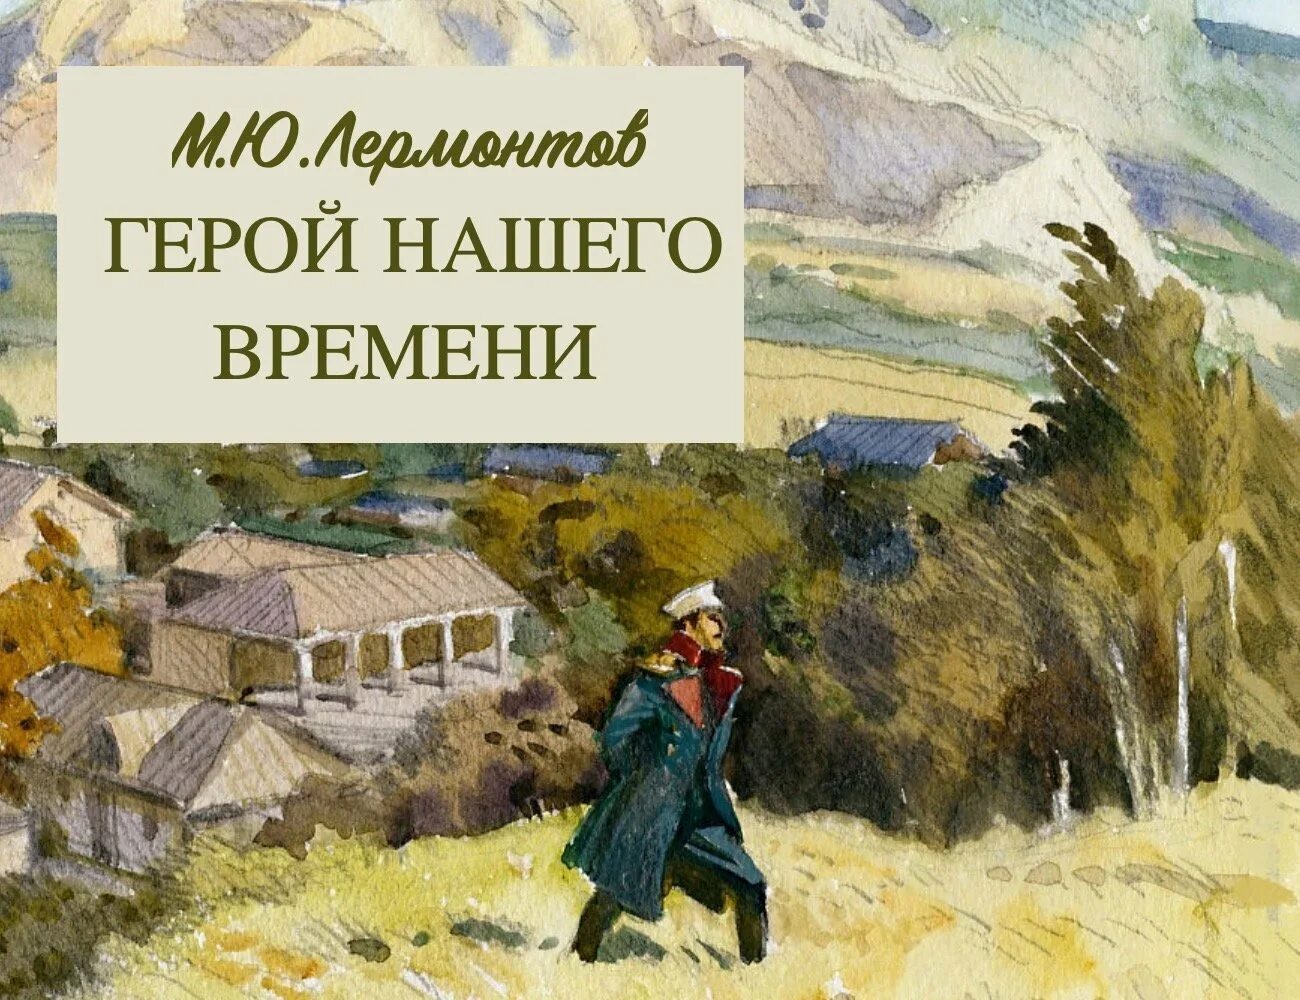 М. Ю. Лермонтова «герой нашего времени». Лермонтов герой нашего времени иллюстрации. Герой нашего времени 1840.